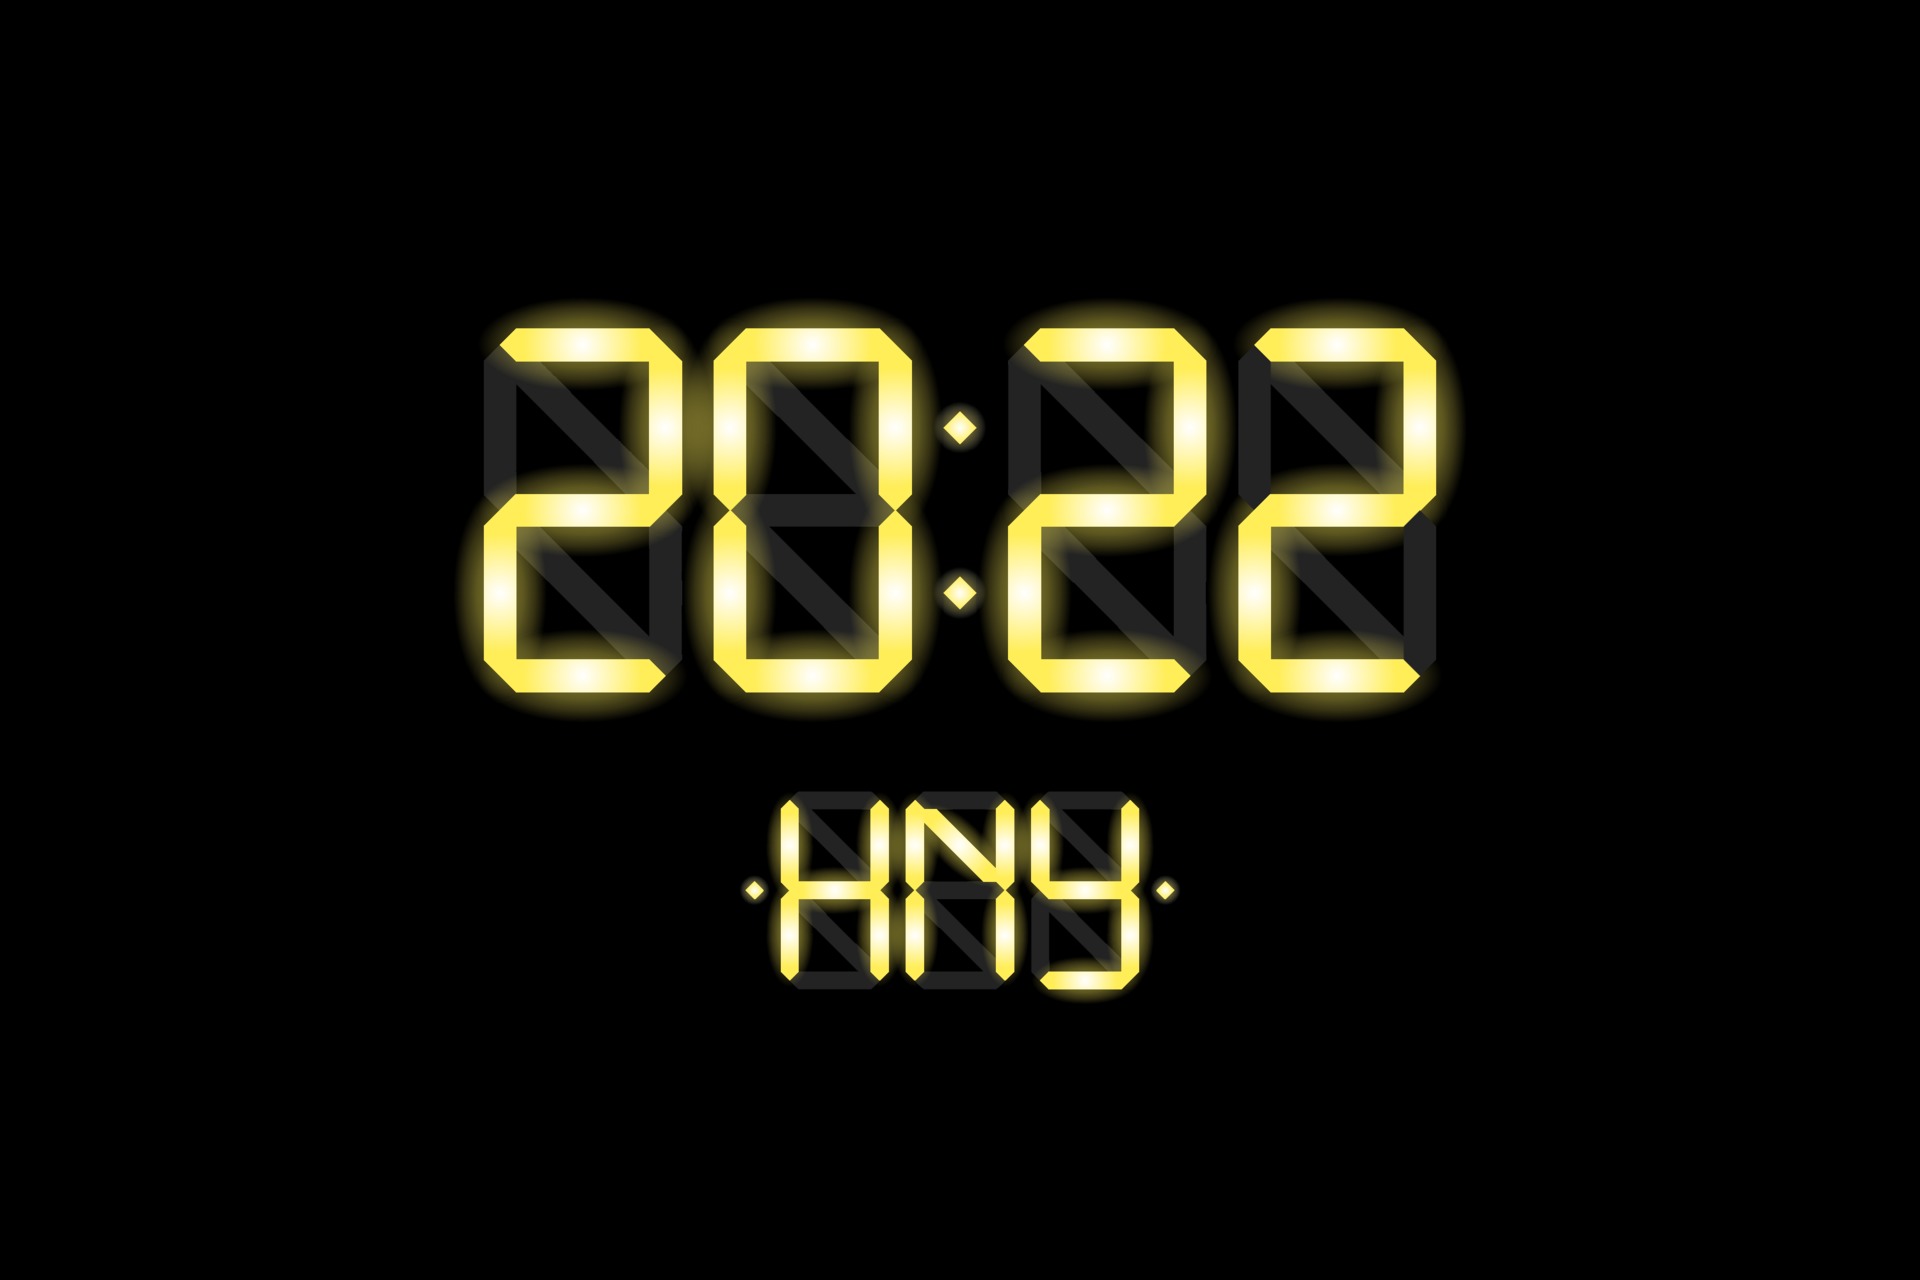 Verloren Bonus paus digitale lcd elektronische display klok nummer 2022 en hny gouden letters  3170363 Vectorkunst bij Vecteezy